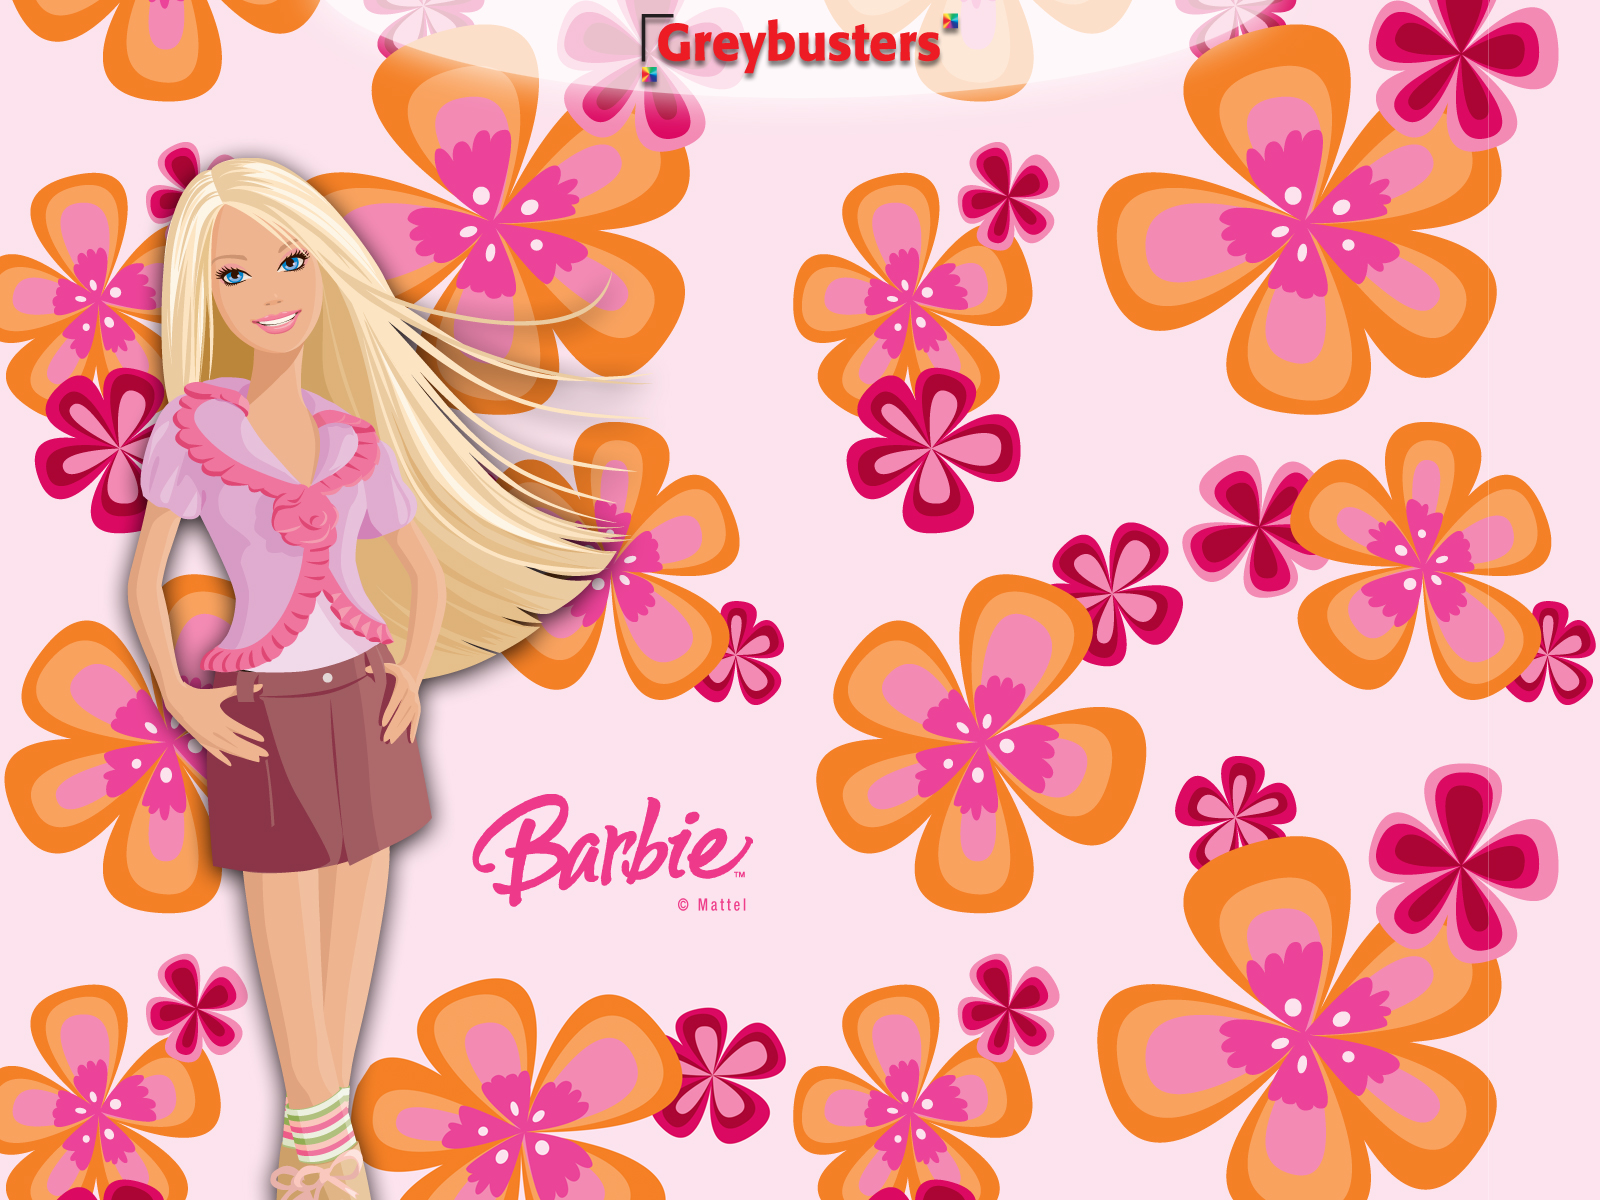 75+] Barbie Wallpapers - WallpaperSafari